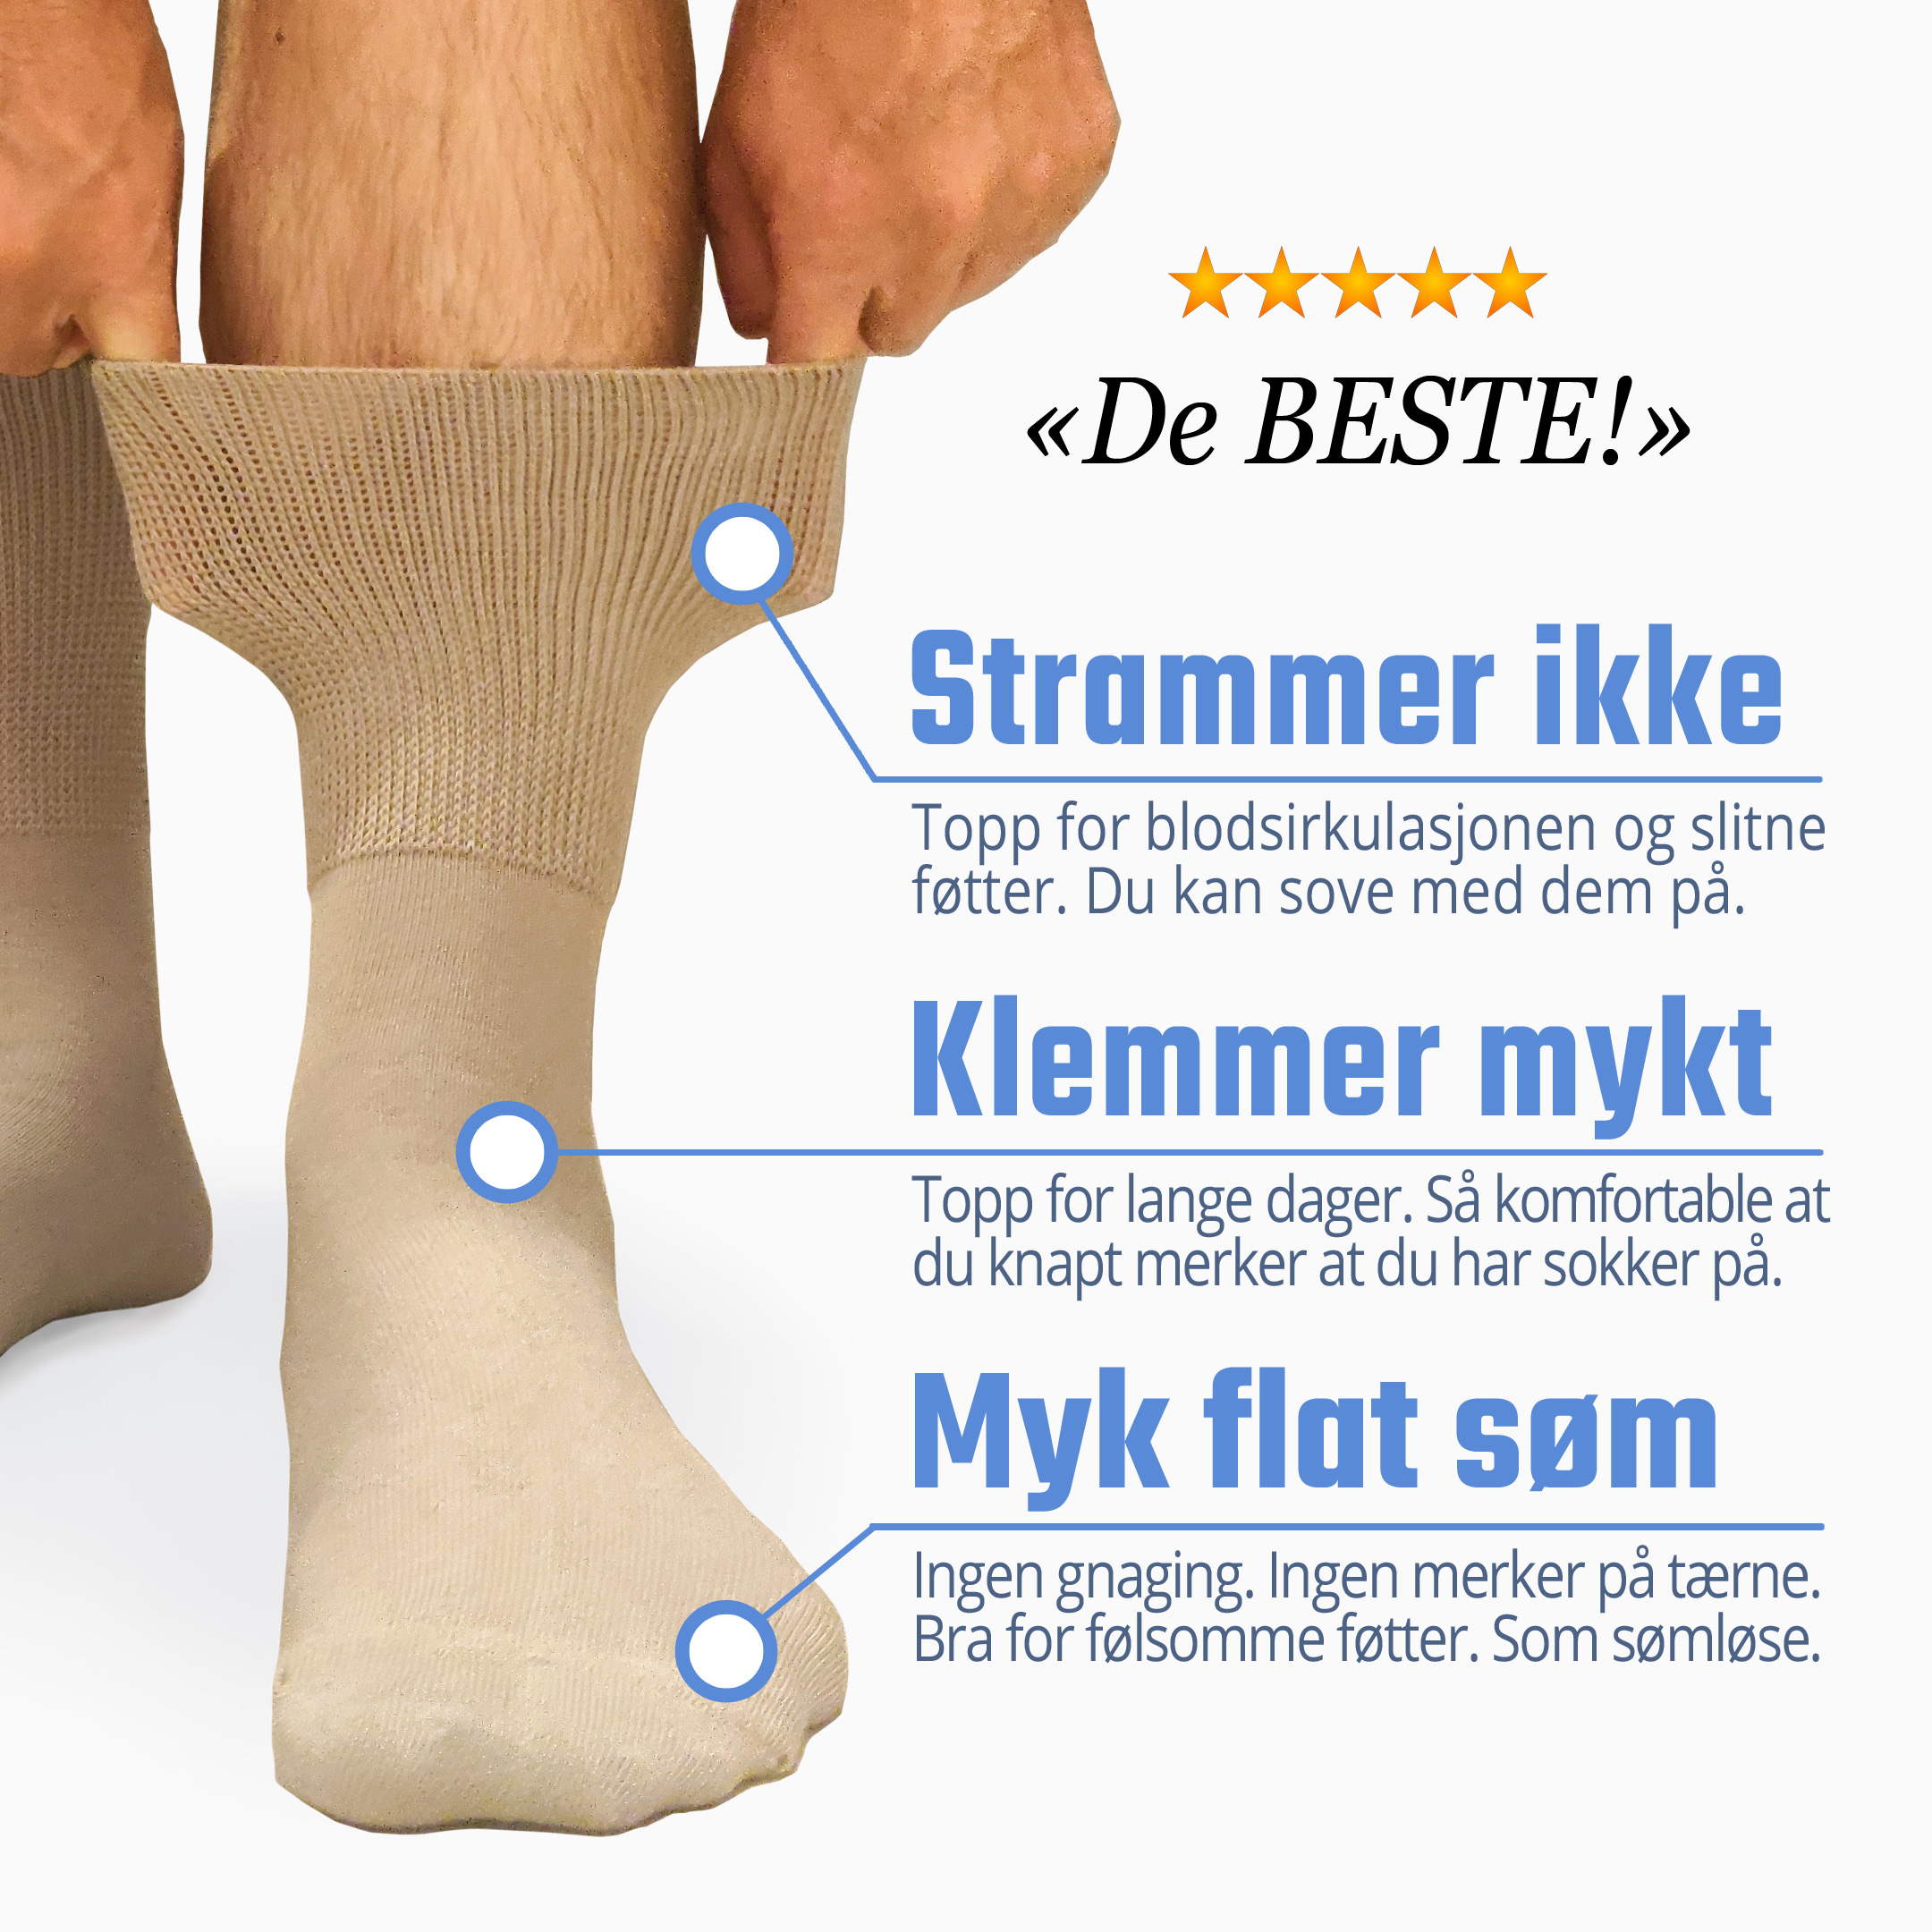 Verdens mest komfortable sokker?